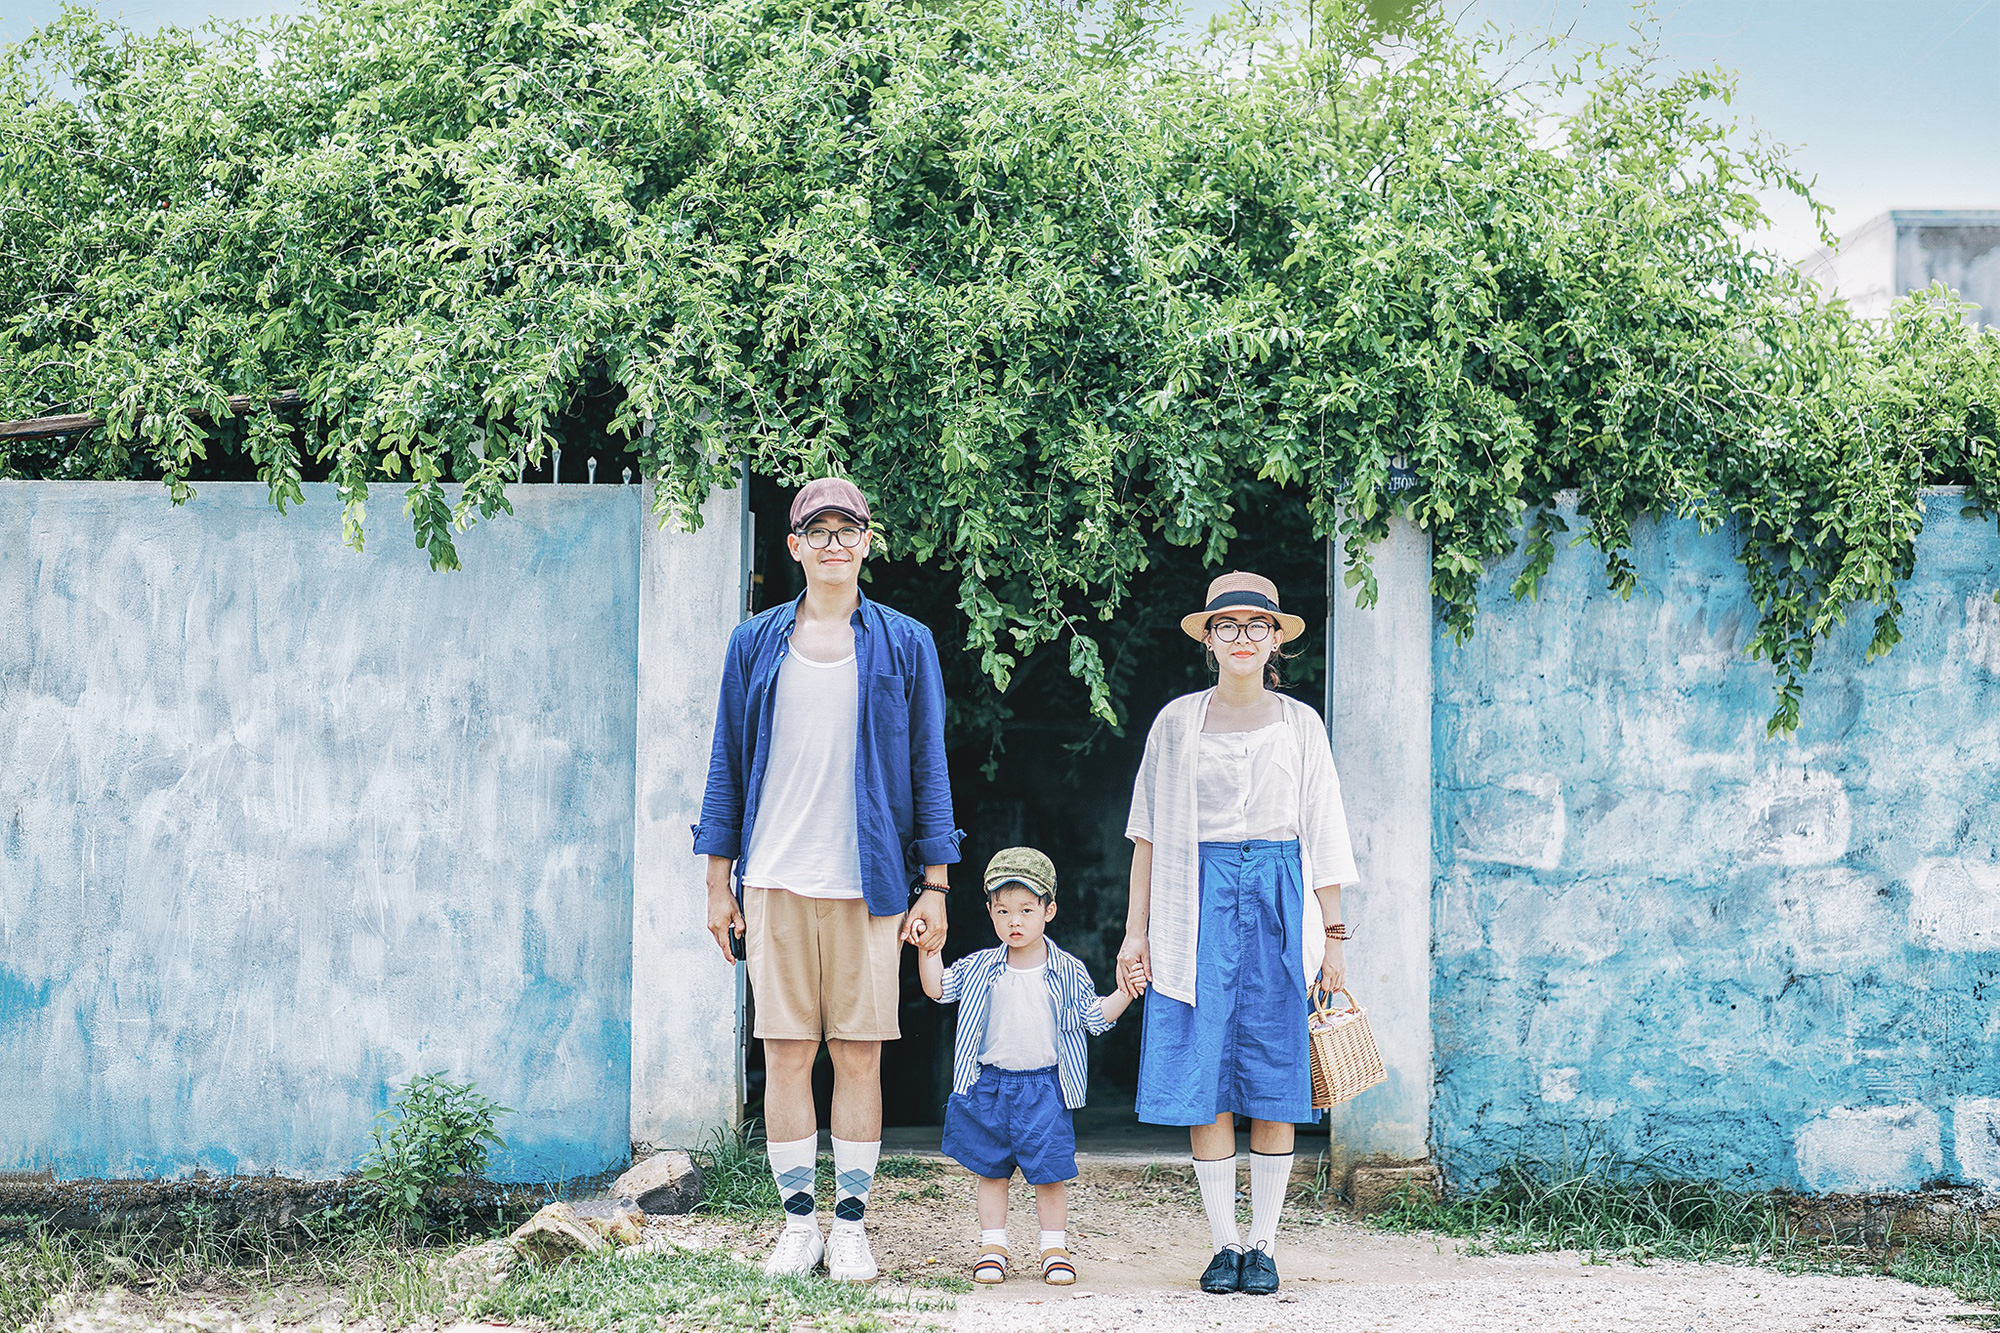 Bình Thuận xanh ngắt trong ảnh du lịch gia đình 3 người - Ảnh 4.